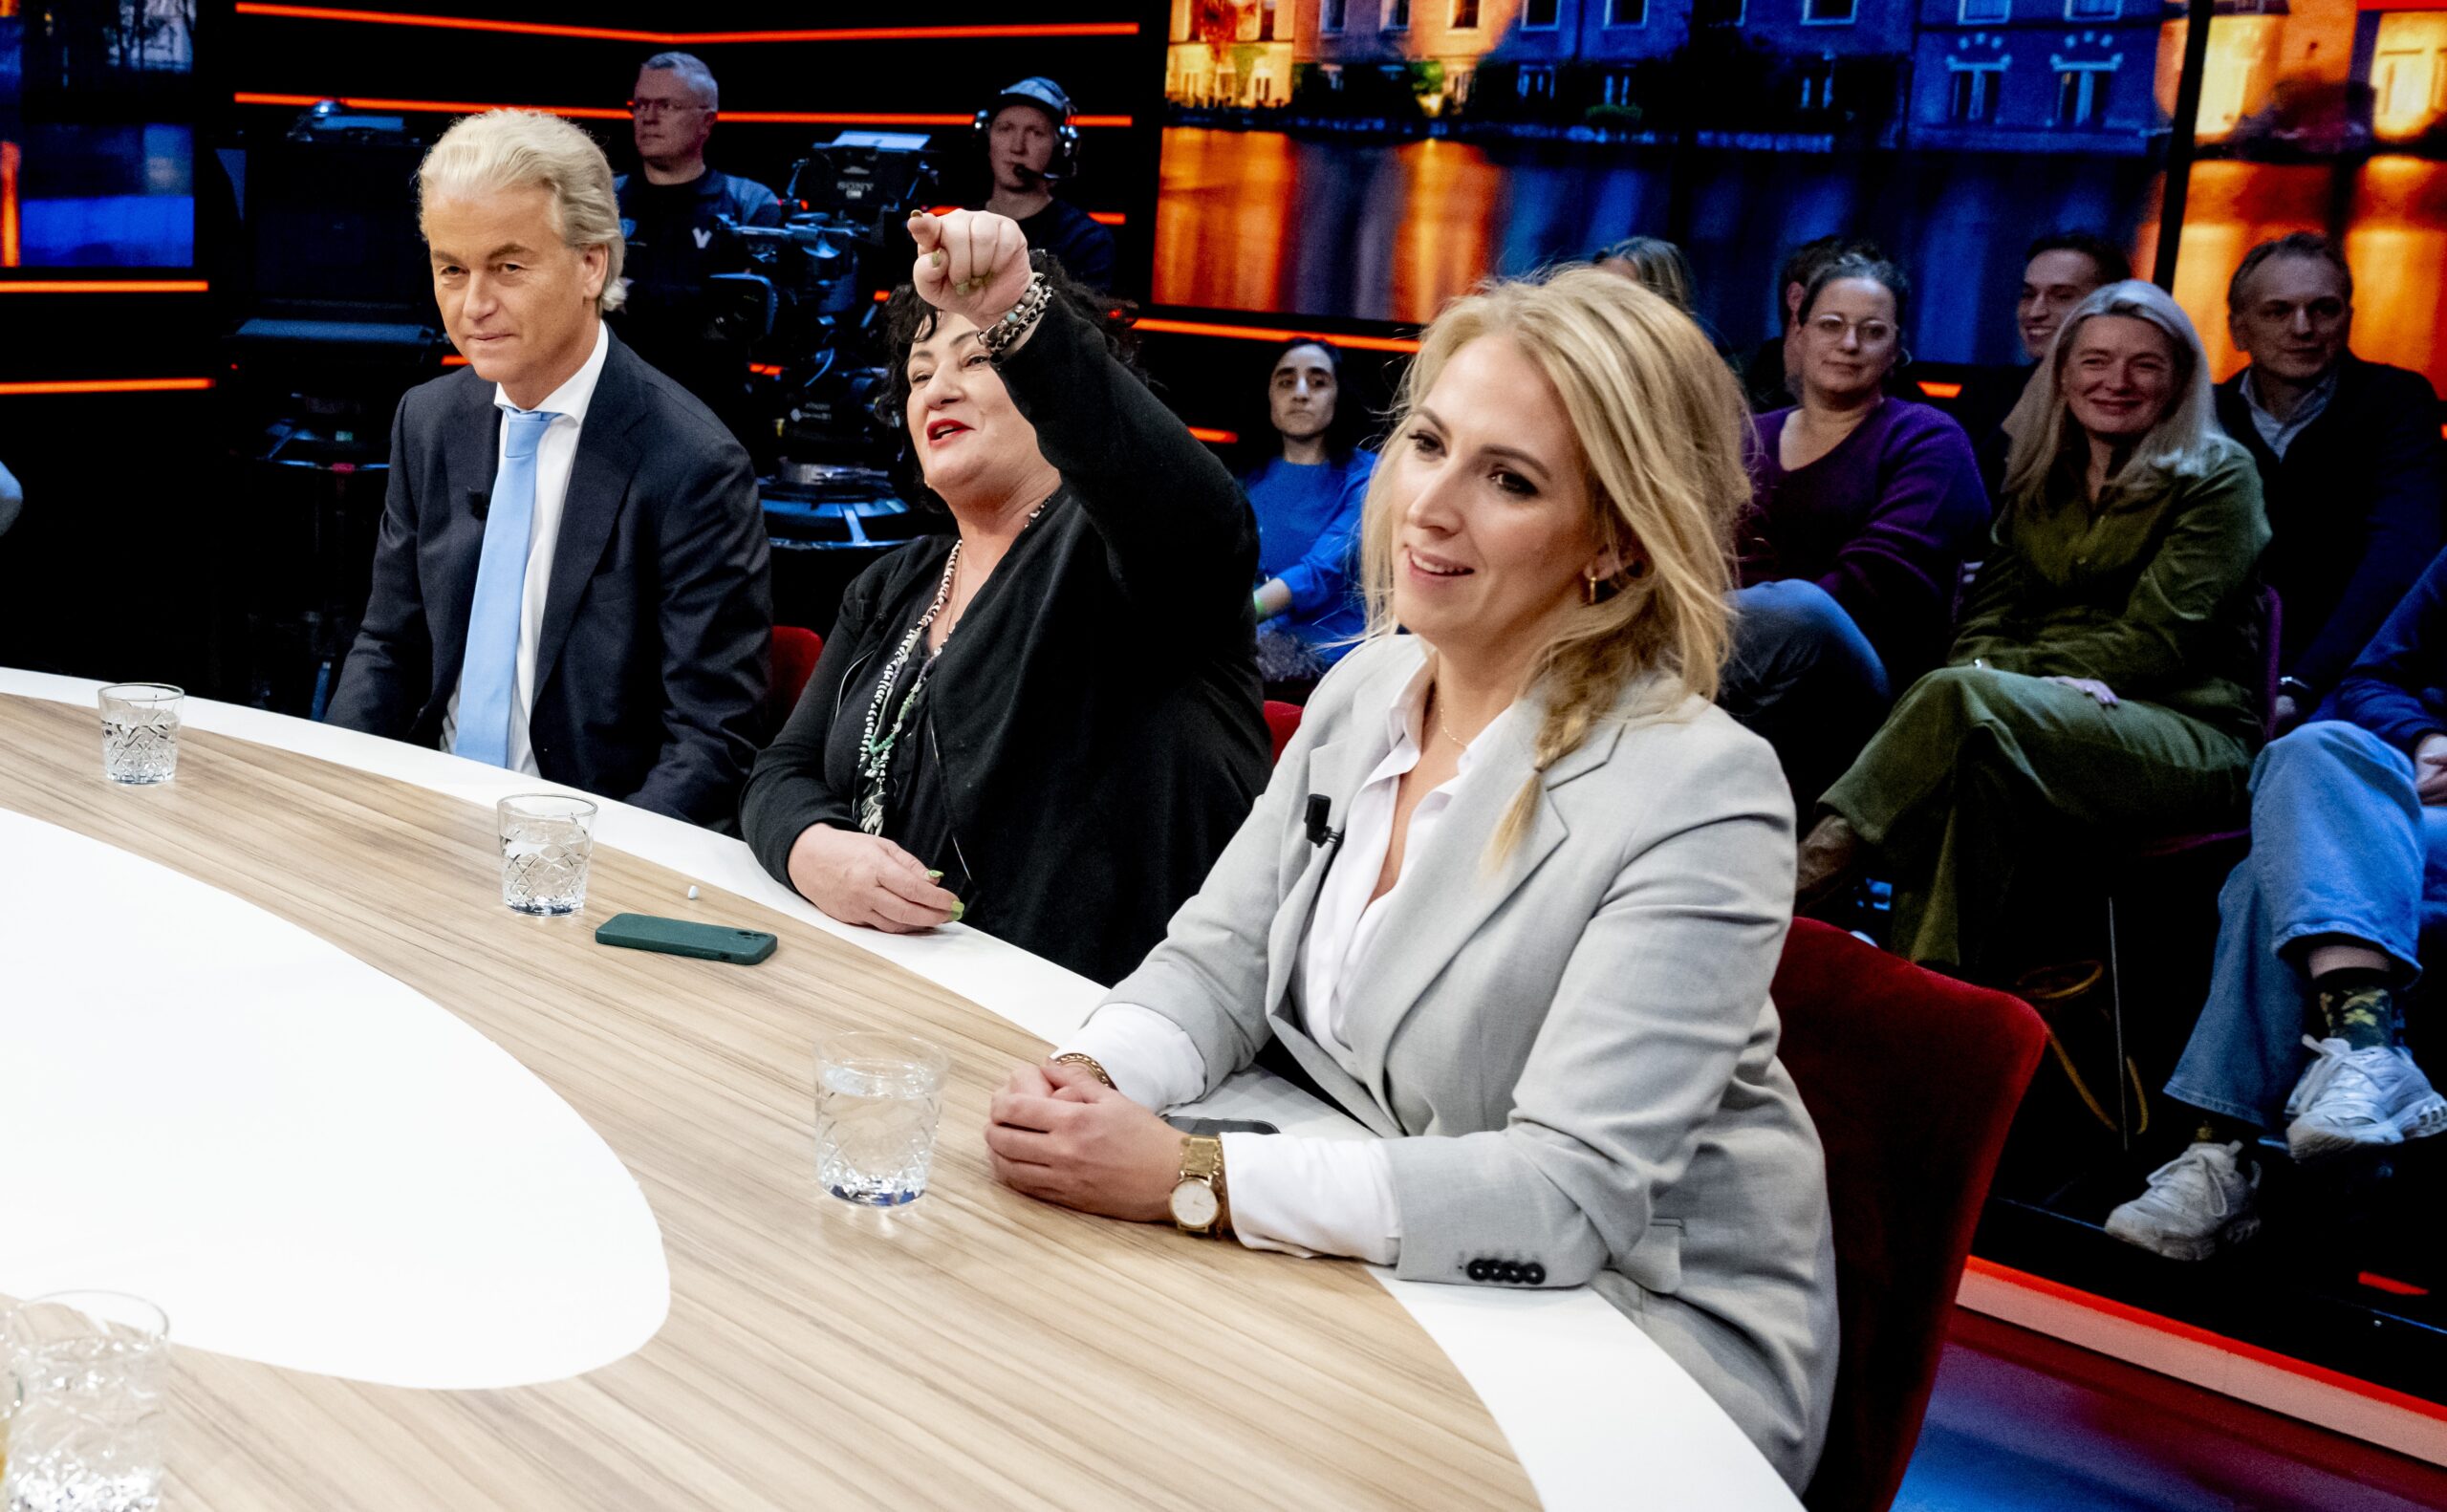 Vlnr: Geert Wilders, Caroline van der Plas en Lilian Marijnissen.